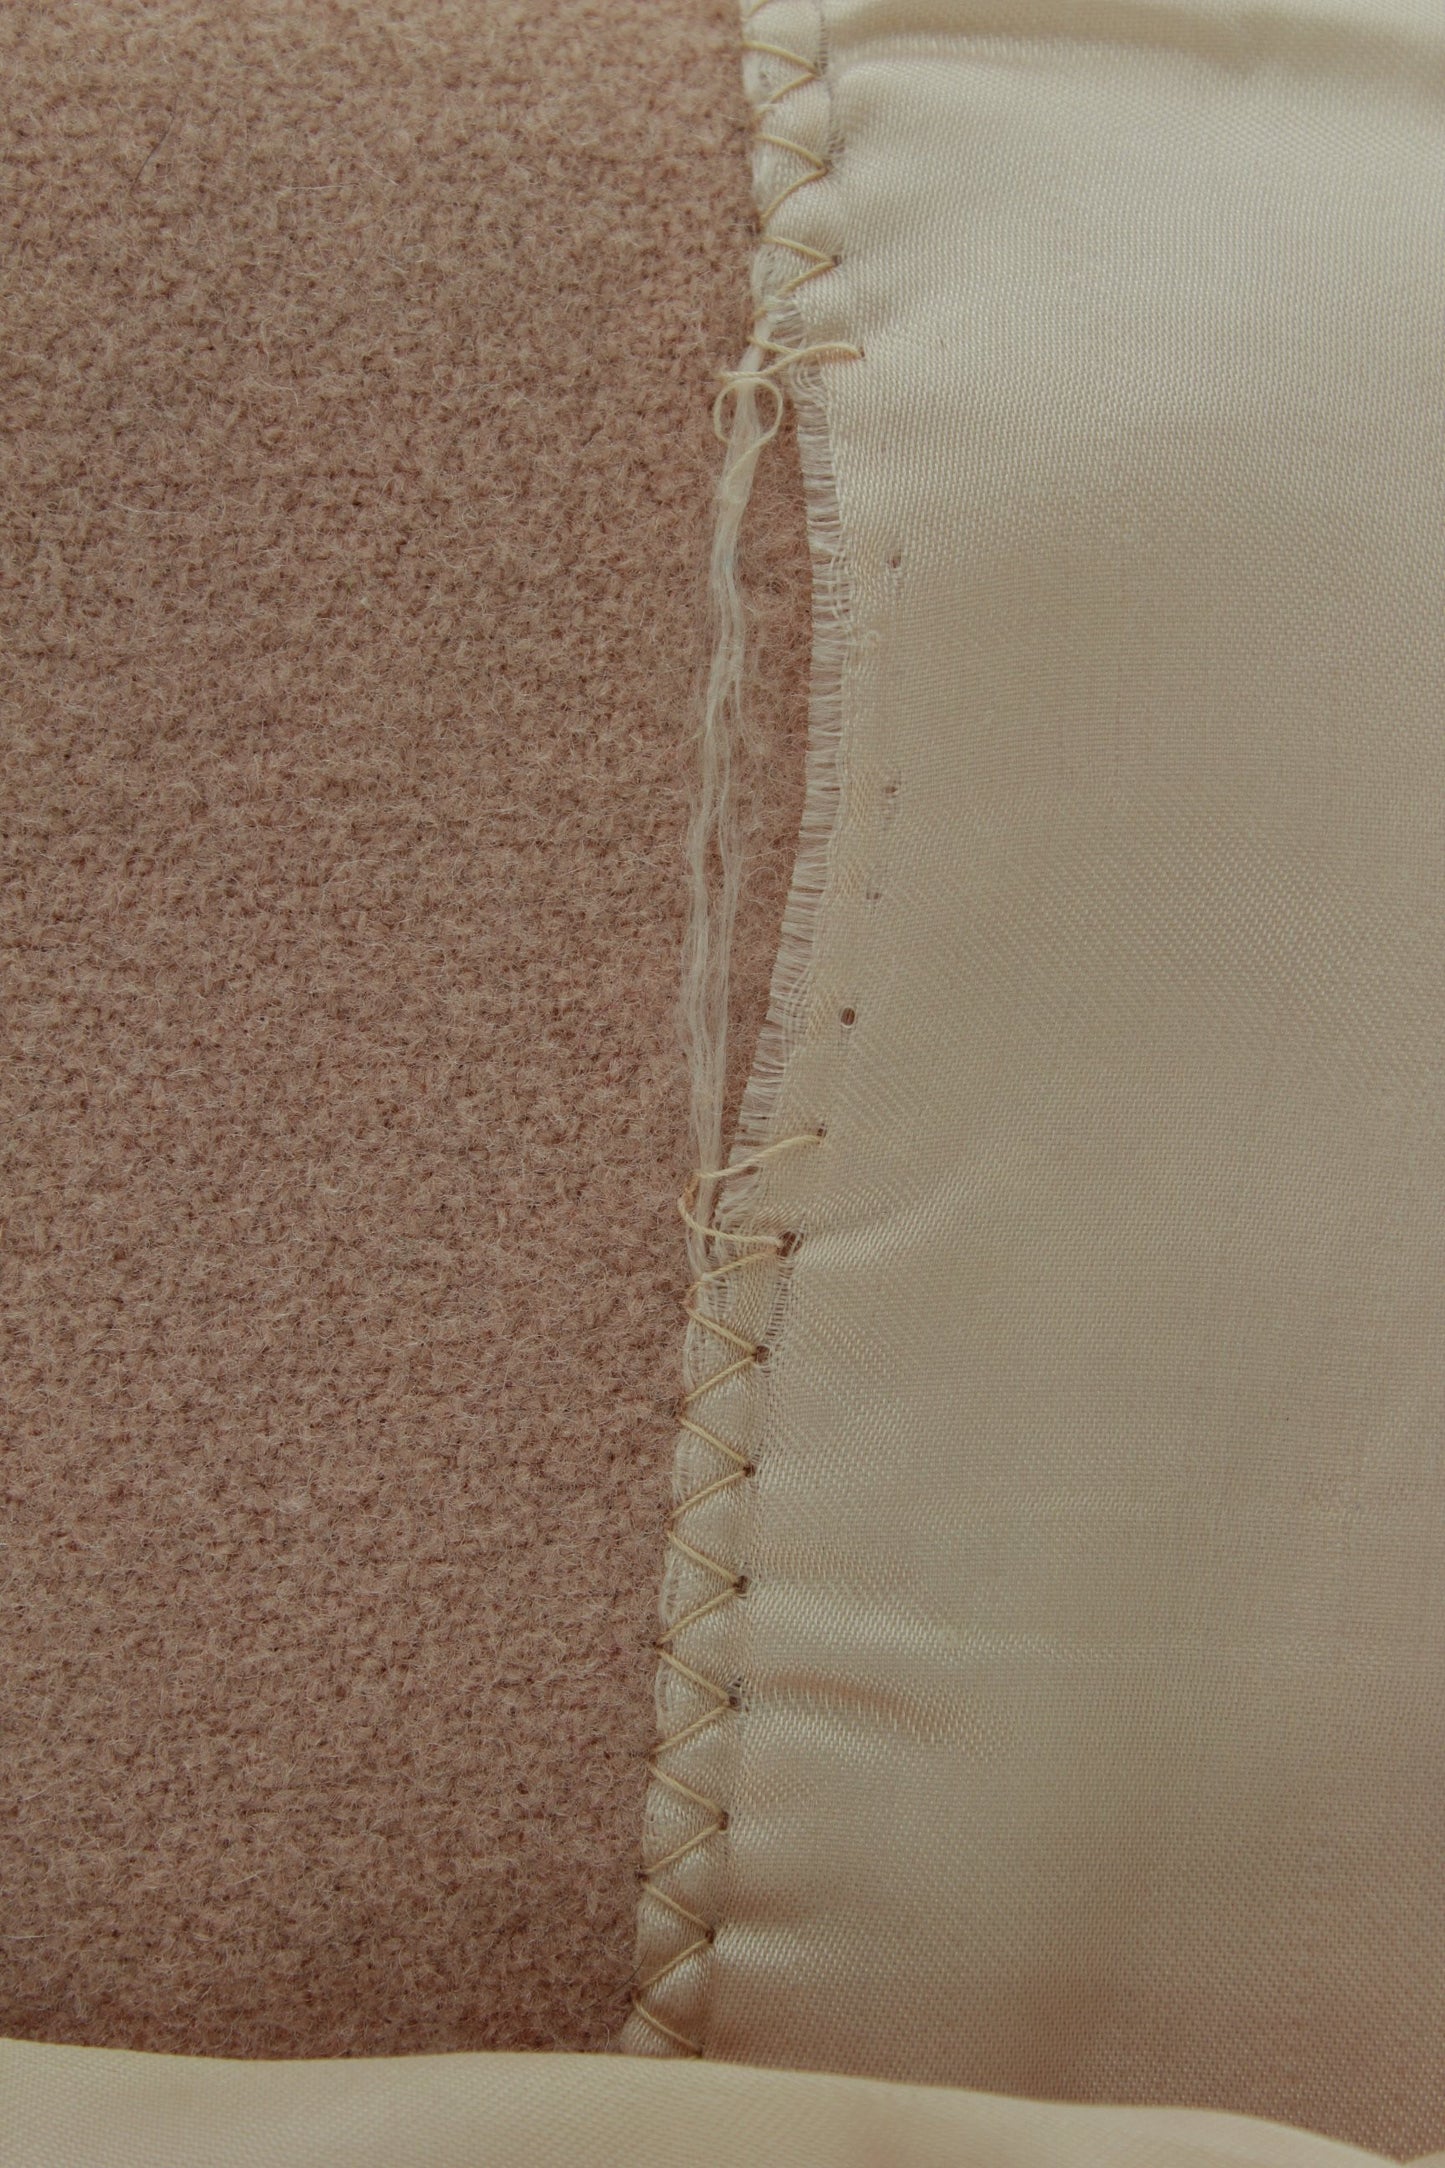 Vintage Wool Blanket Pale Rose Dense Weave Mid Century good